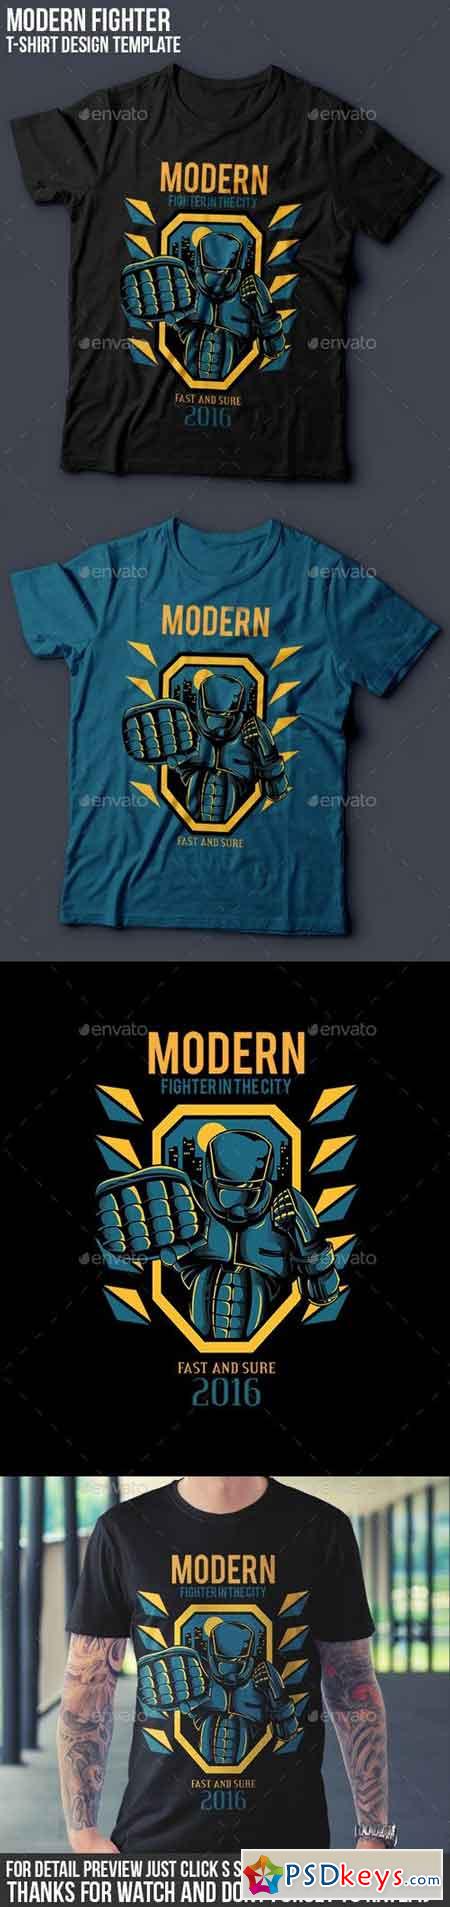 Modern Fighter T-Shirt Design 14481077